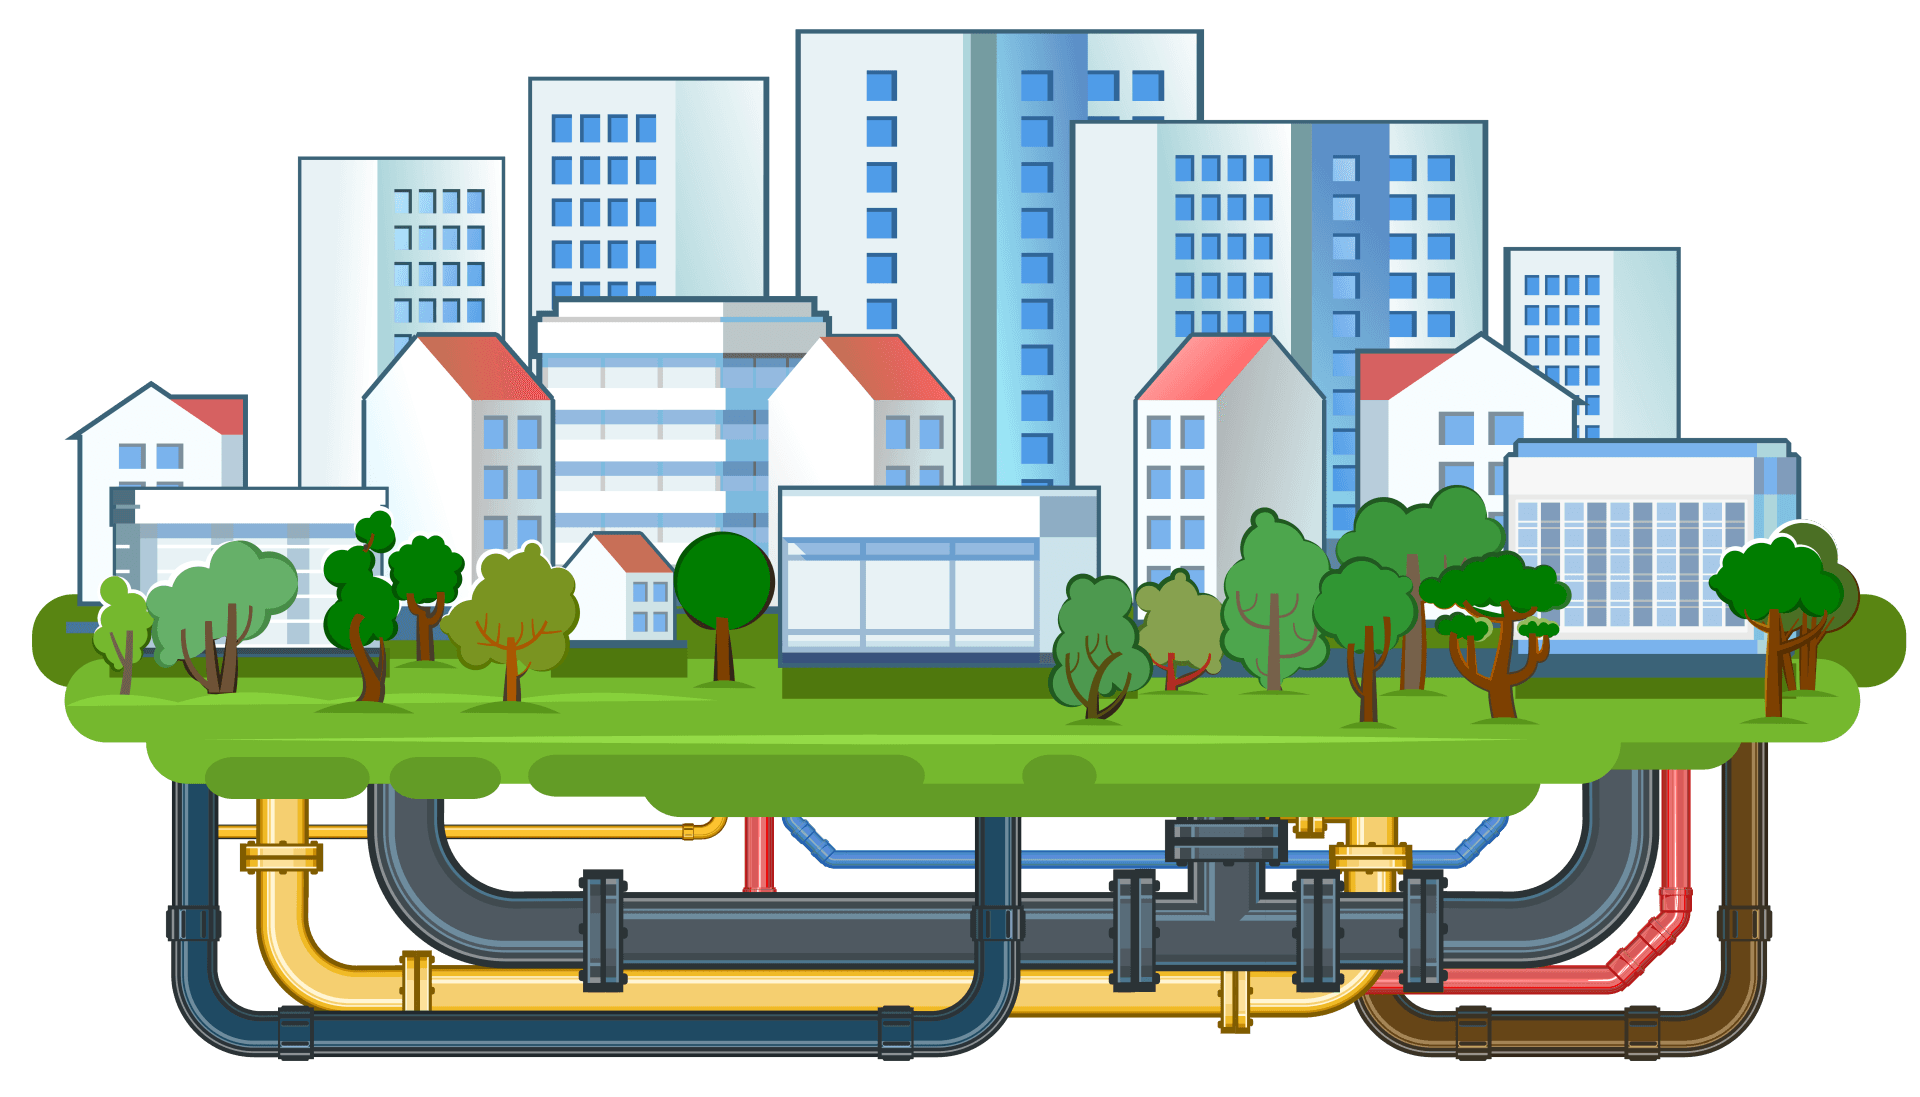 City with underground pipeline